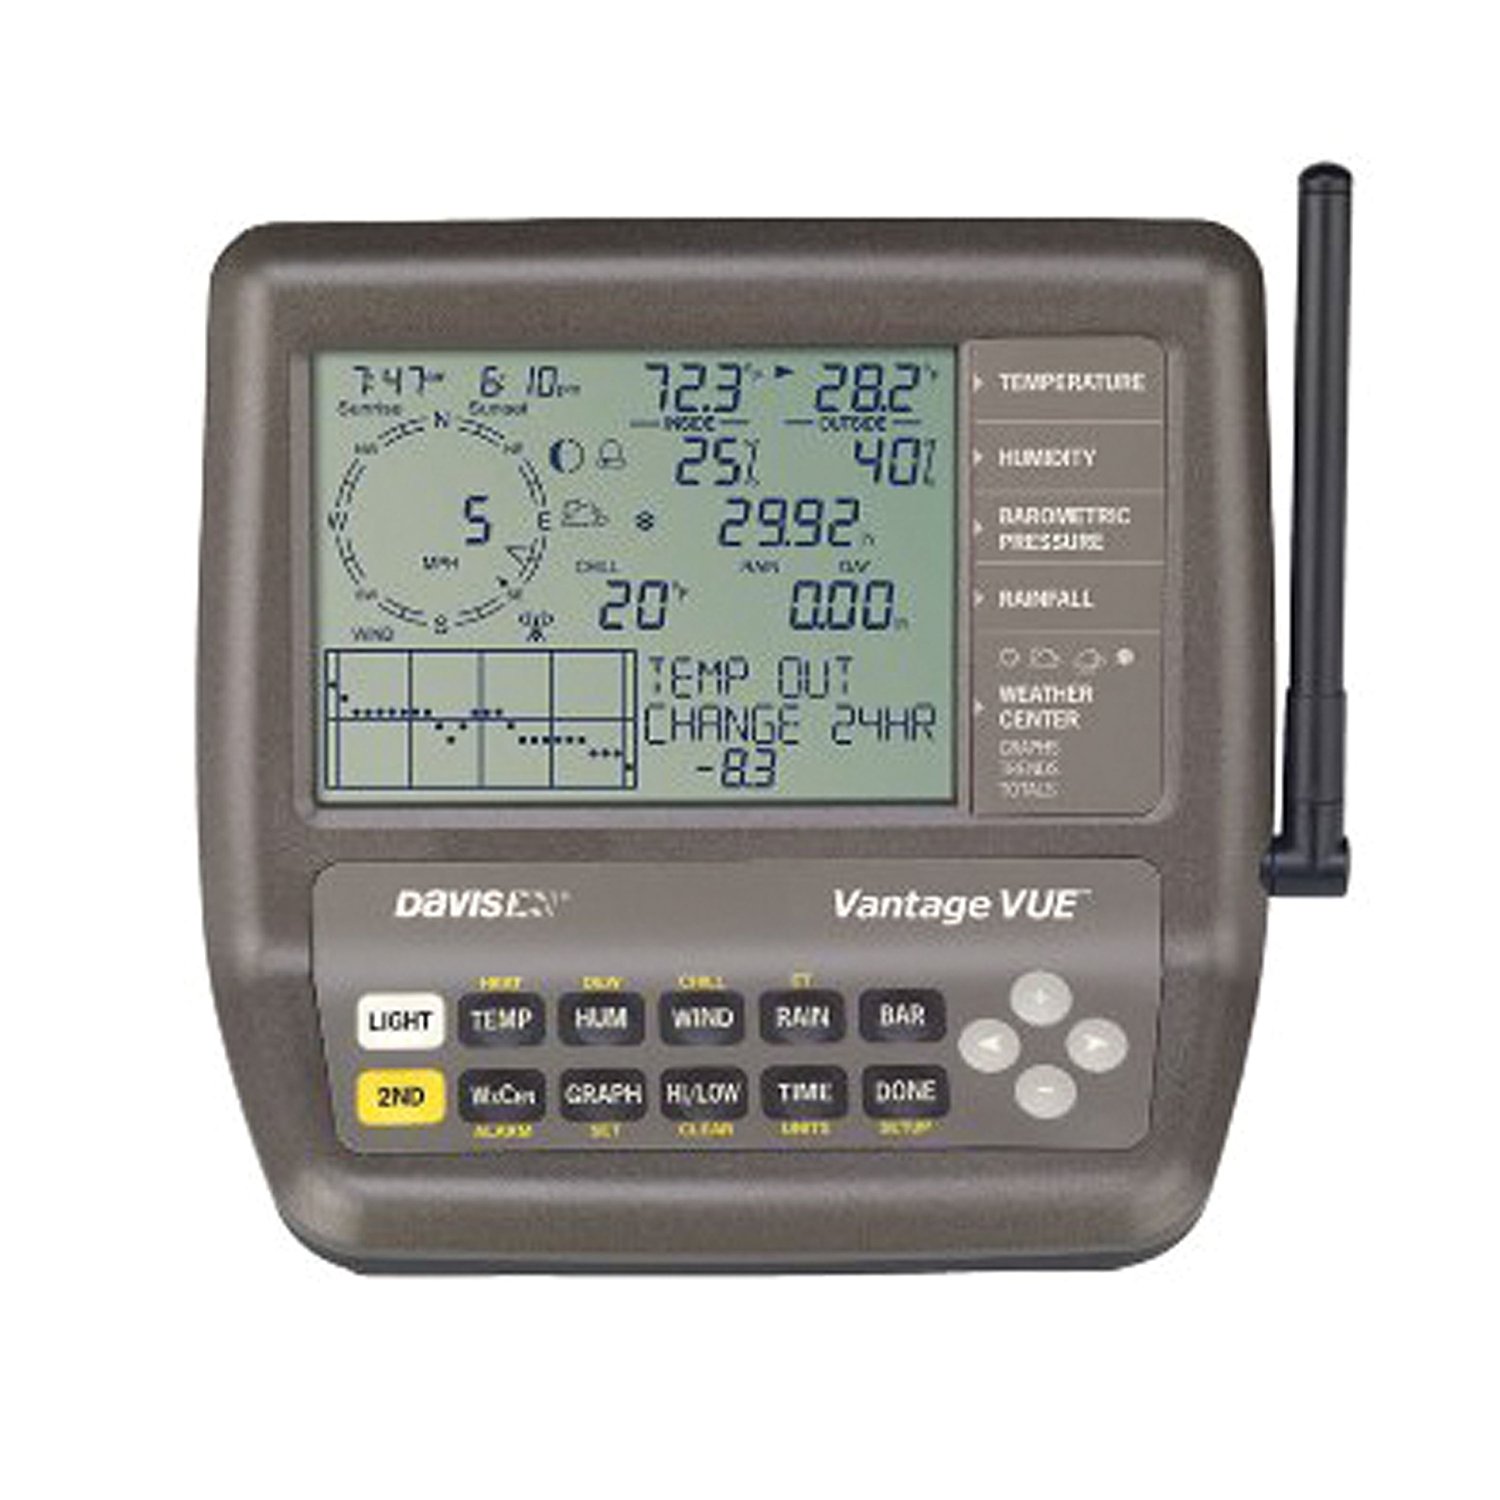 Davis Instruments 6250 Vantage Vue Wireless Weather Station 